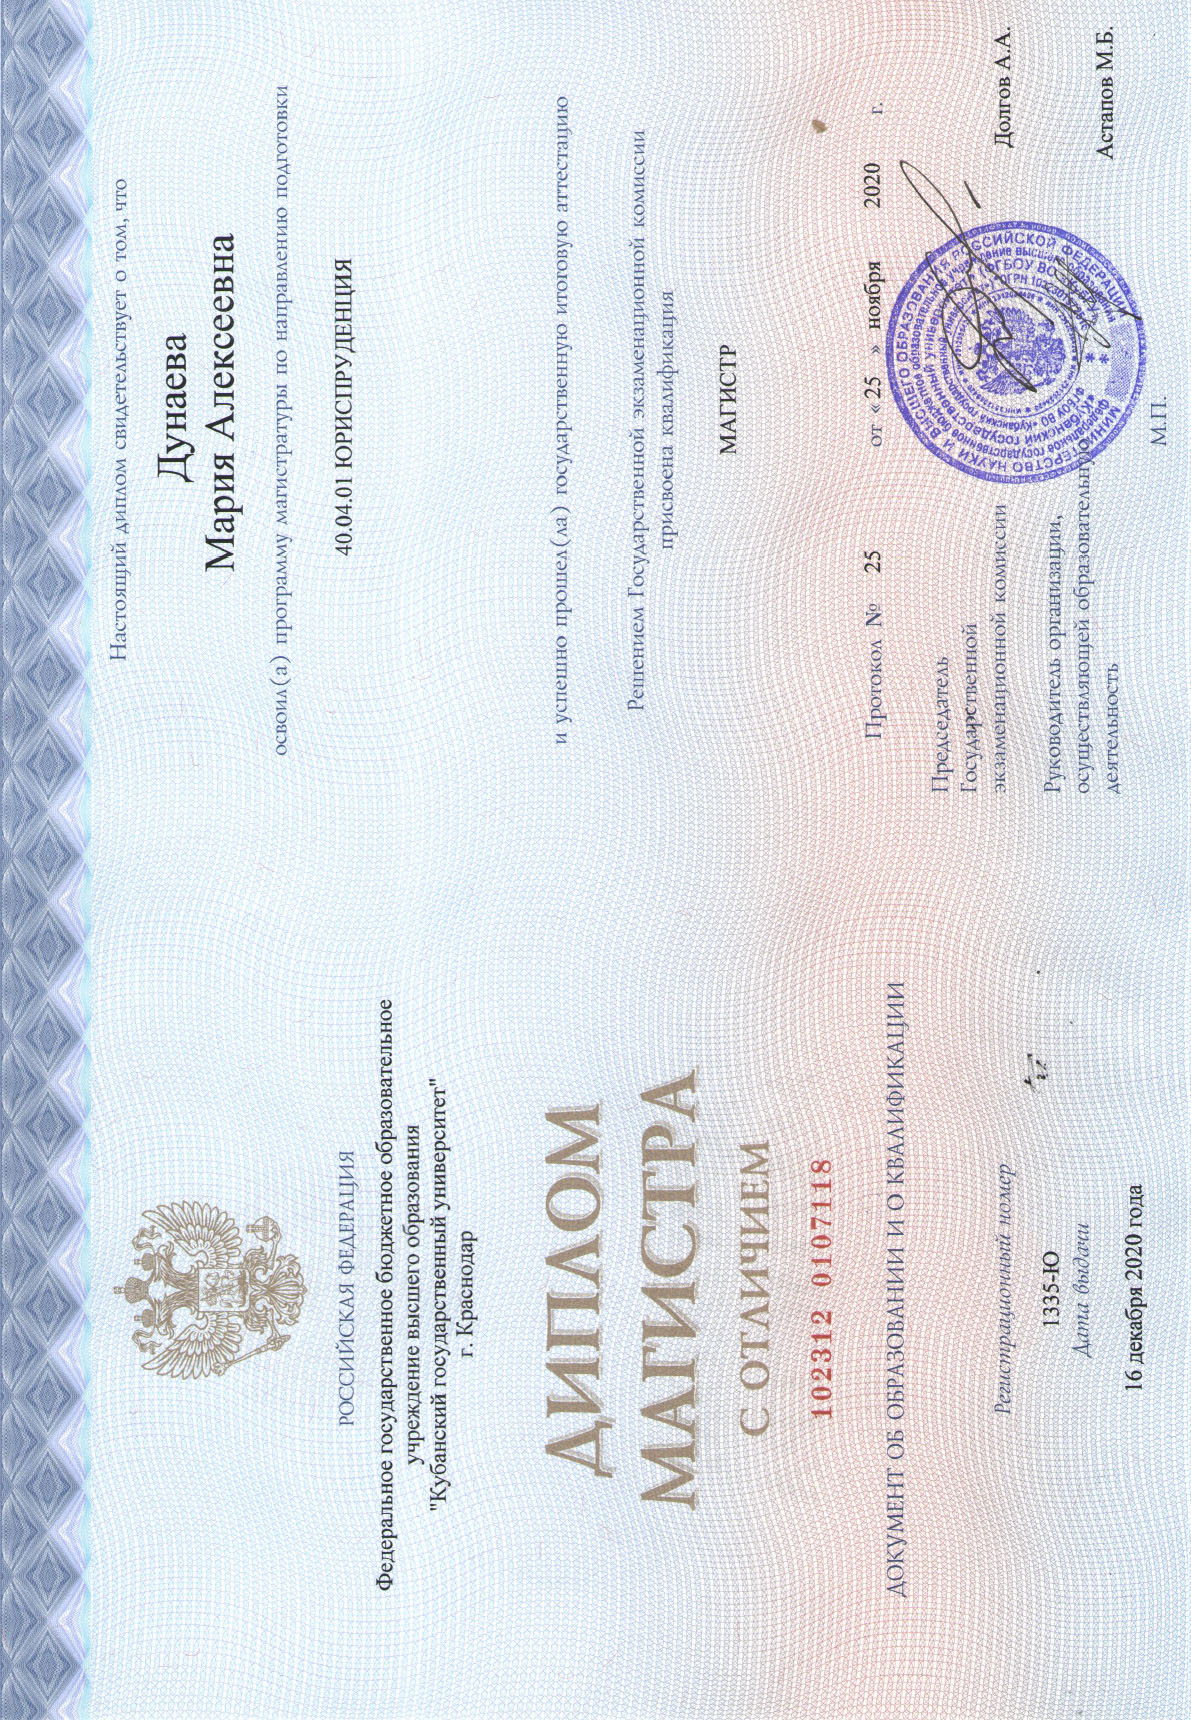 Диплом магистра юриспруденции Дунаева М.А.